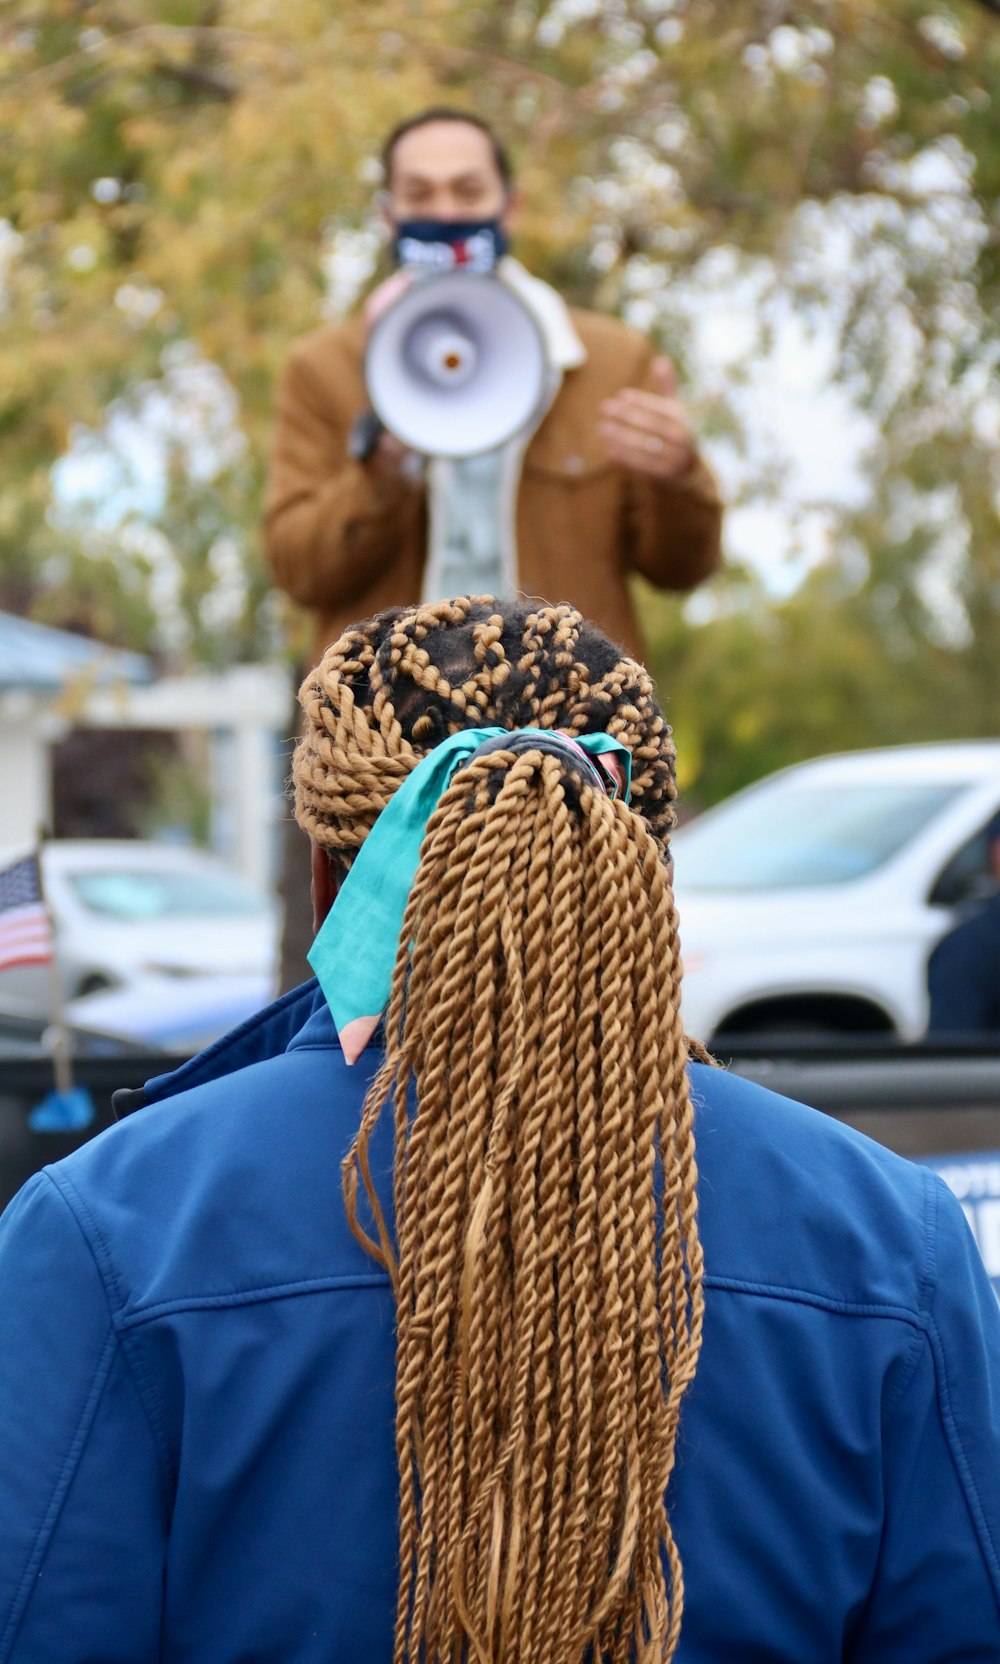 donna in camicia blu a maniche lunghe che tiene la sciarpa a maglia marrone e nera